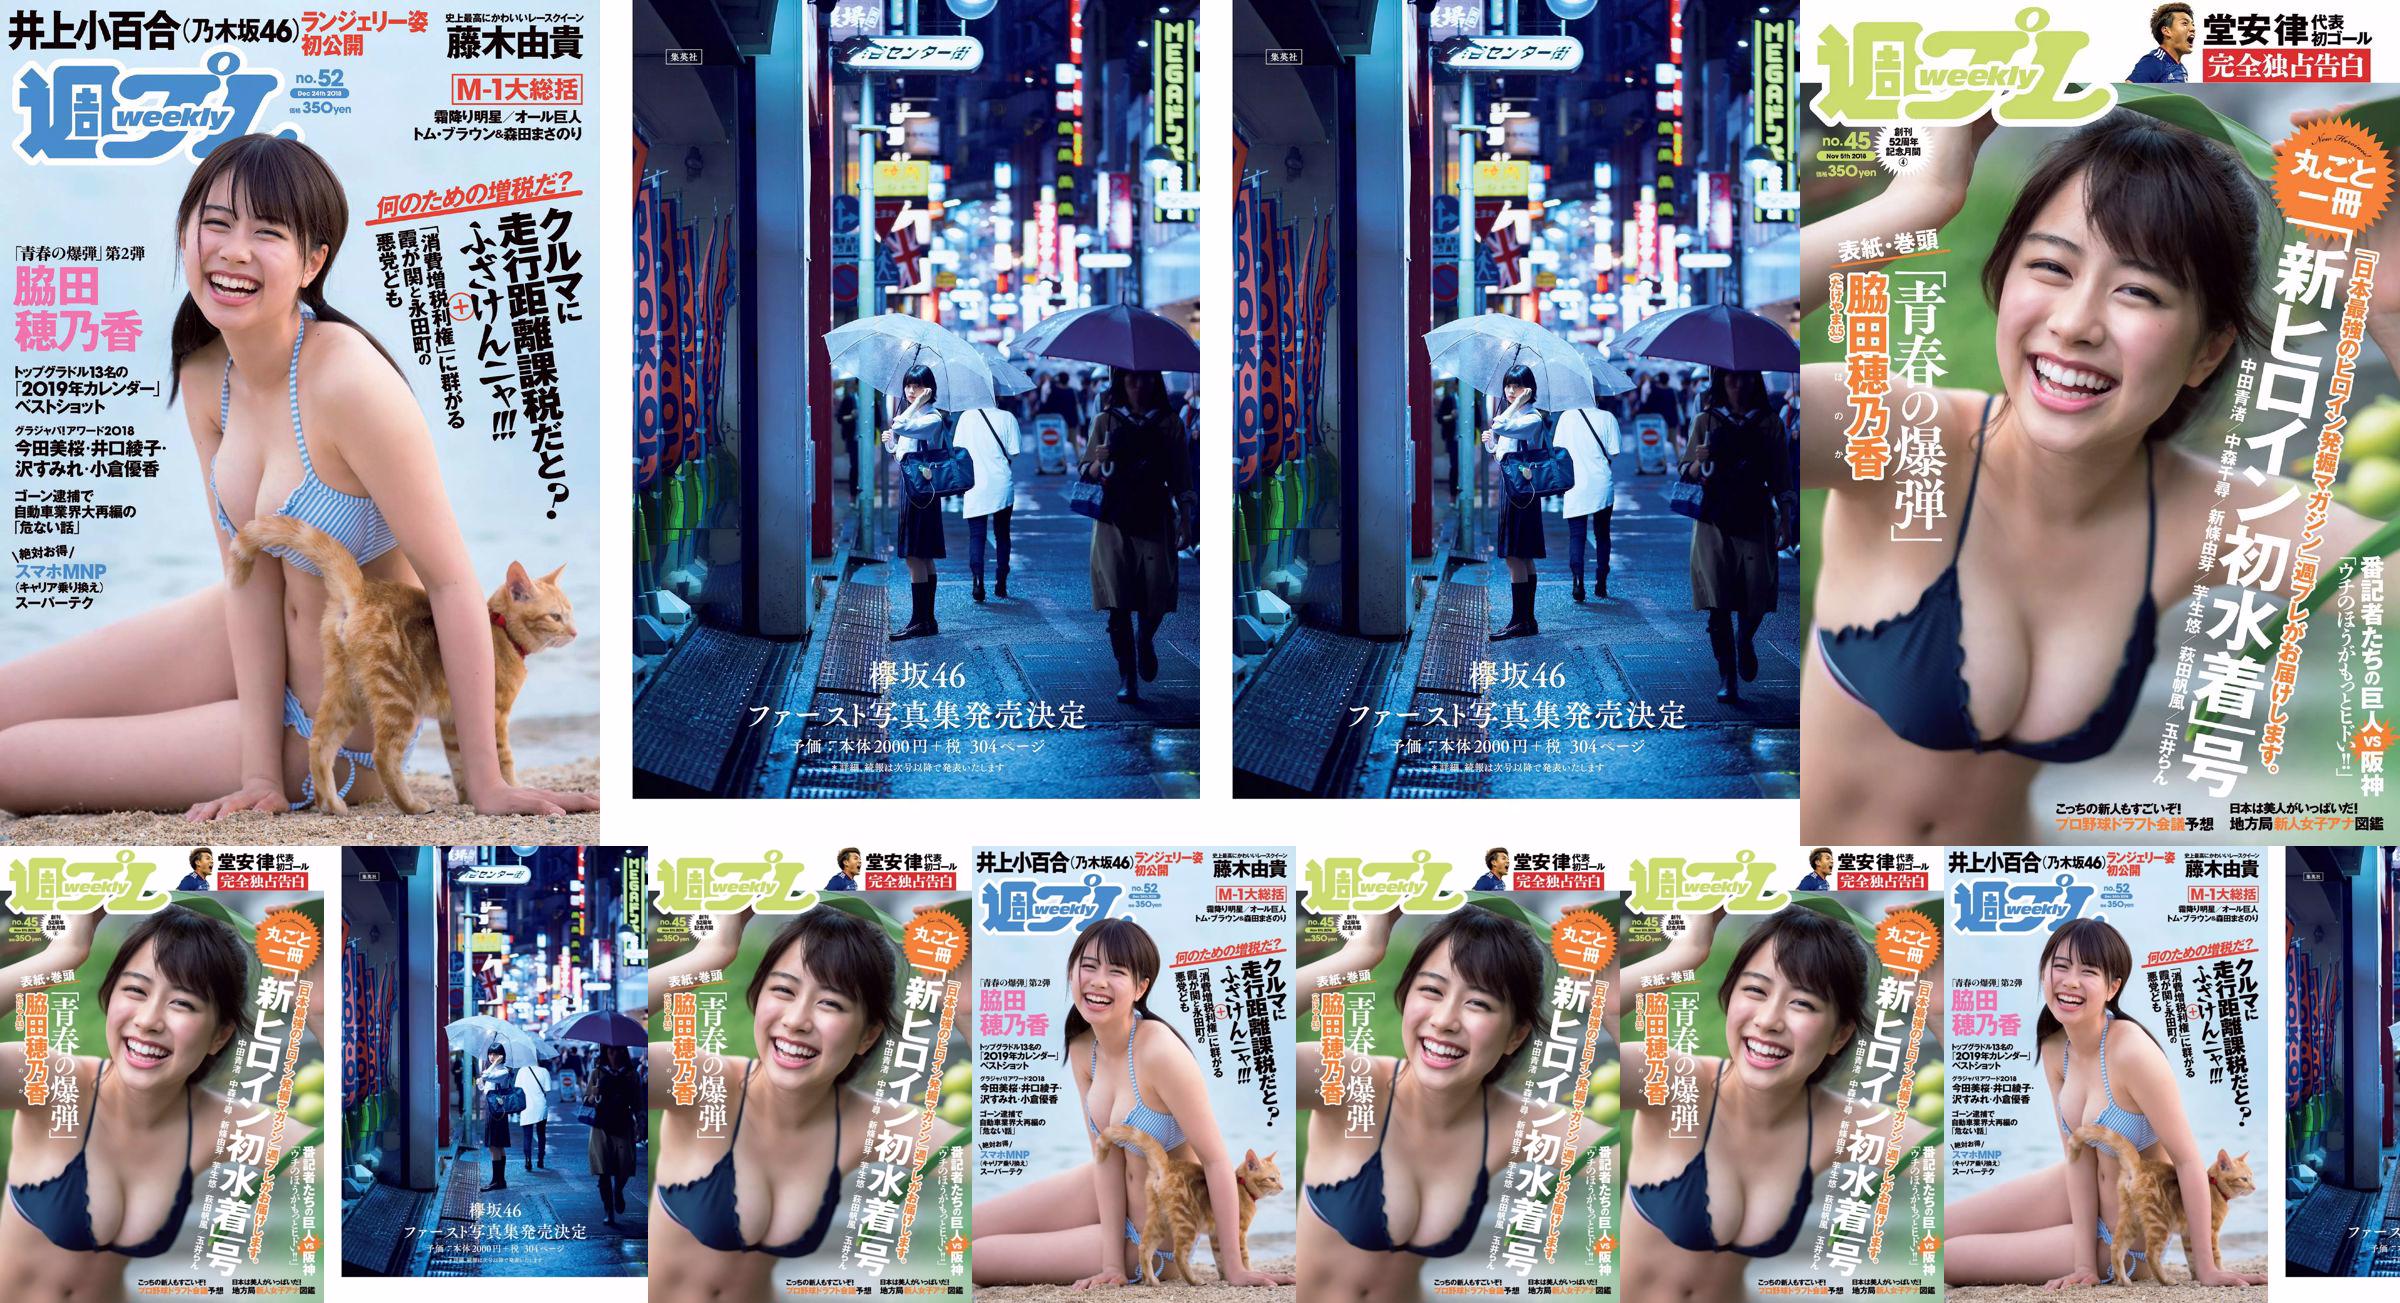 Wakada Honoka, Inoue Sayuri, Mizusawa Yuno, Fujiki Yuki, Koizumi Haruka, Kaito みらい, Tachiki Ayano [Weekly Playboy] 2018 No.52 Photo Magazine No.0eb1cf Page 1